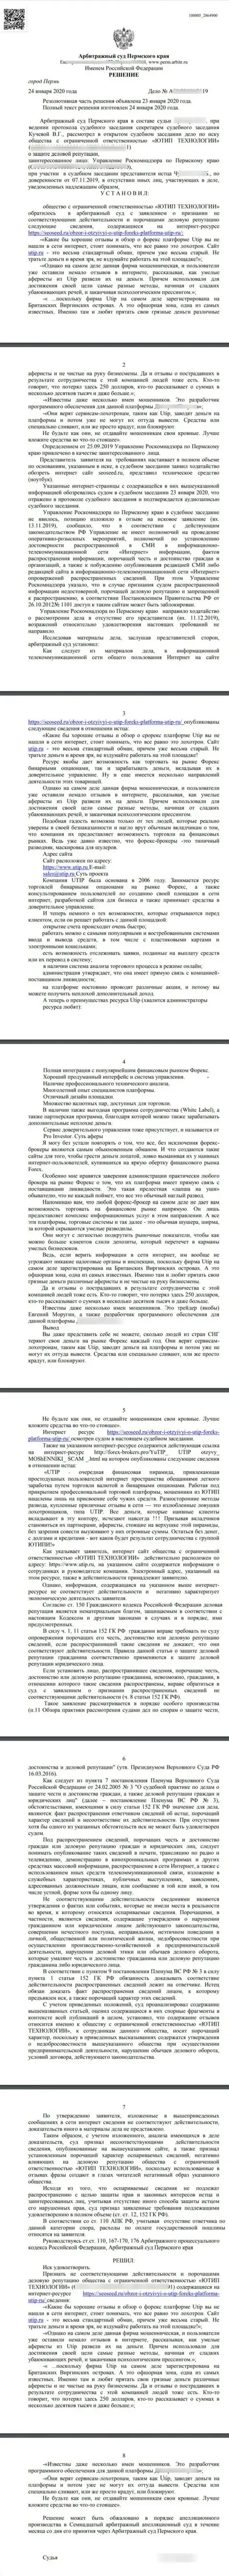 Исковое заявление мошенников UTIP Org в отношении интернет-ресурса SeoSeed Ru, который удовлетворён самым справедливым судом